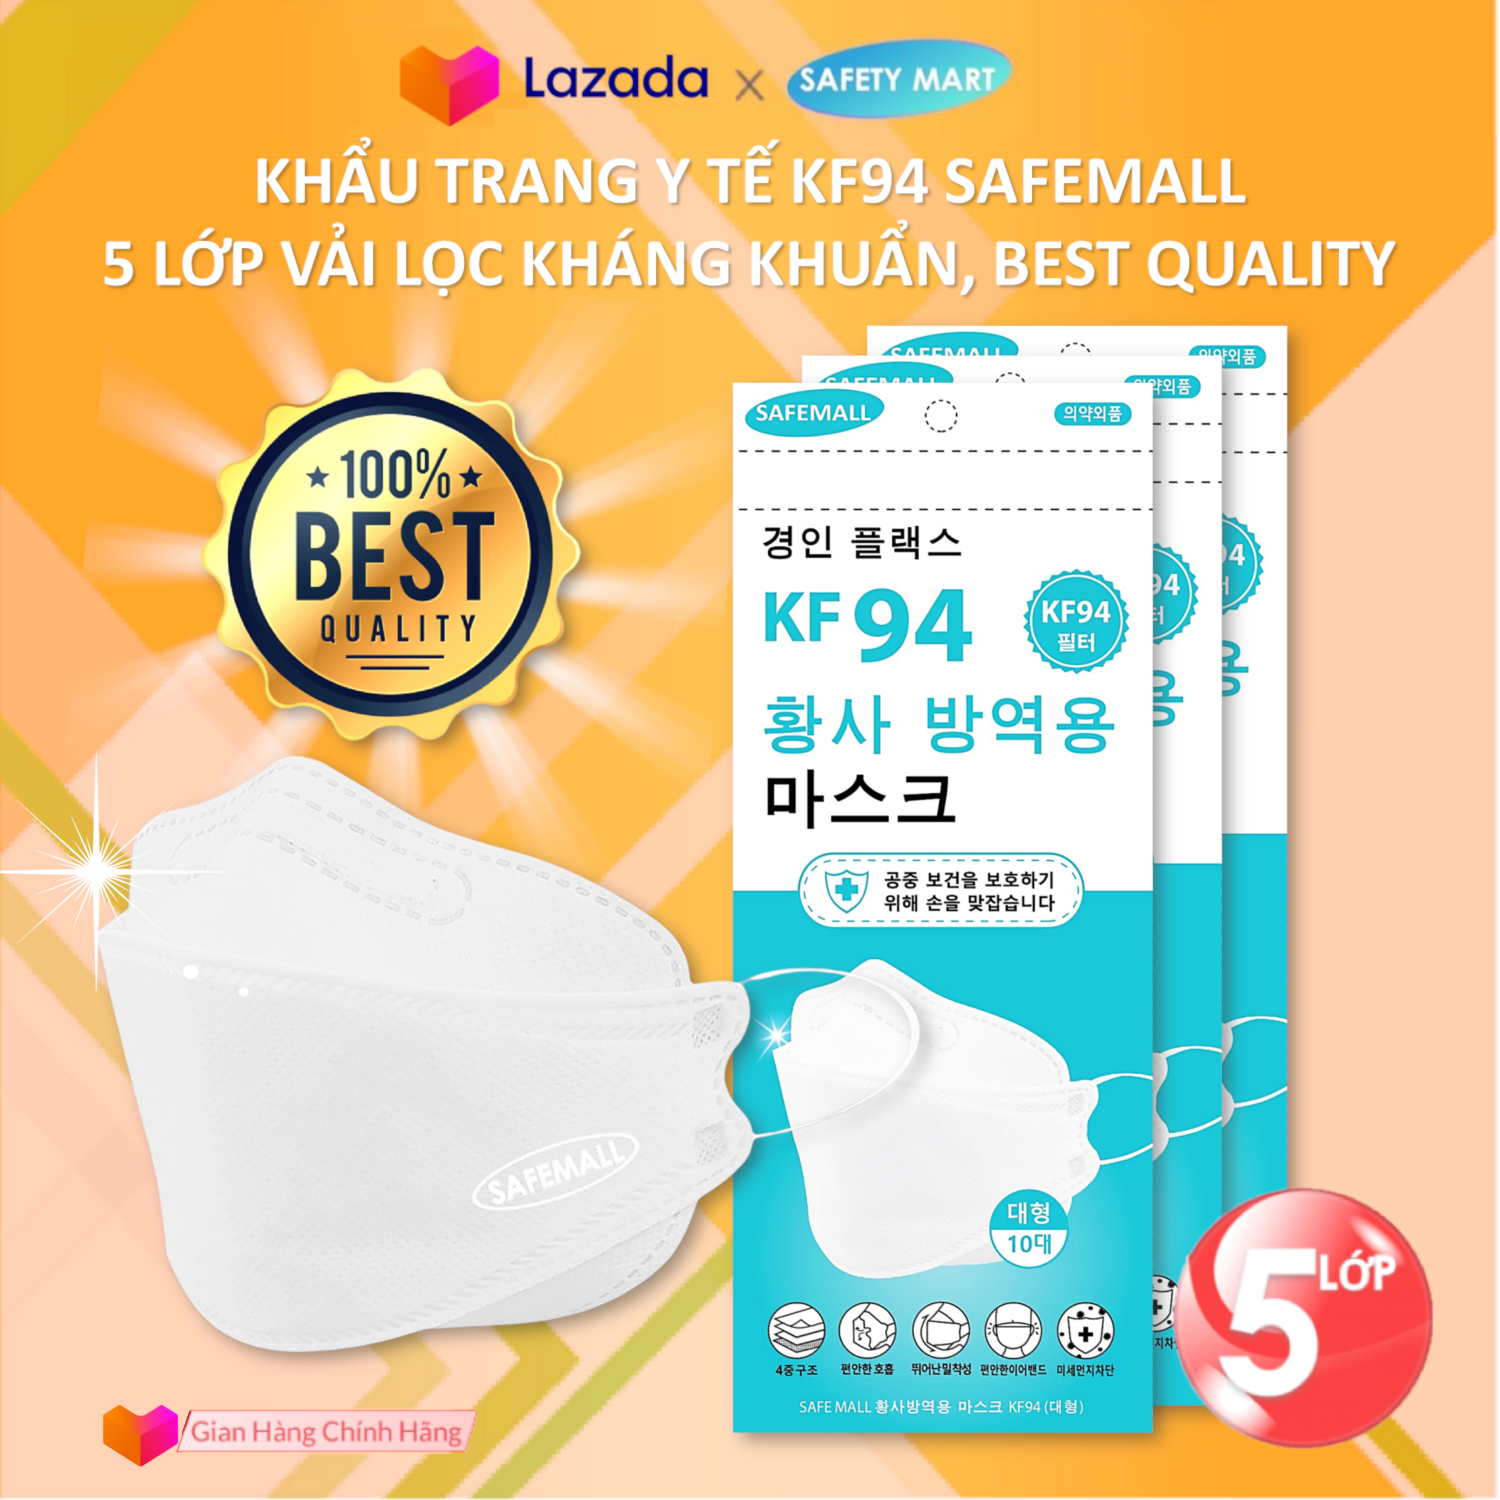 [HOT] Thùng 300 Khẩu trang y tế KF94 SafeMall 5 lớp lọc Premium N99+ Korea Technology , Thùng 300 chiếc khẩu trang KF94 loại 5 lớp Kháng Khuẩn Kháng Bụi Mịn lên đến 99% - Hàng Chính Hãng Safety Mart Official